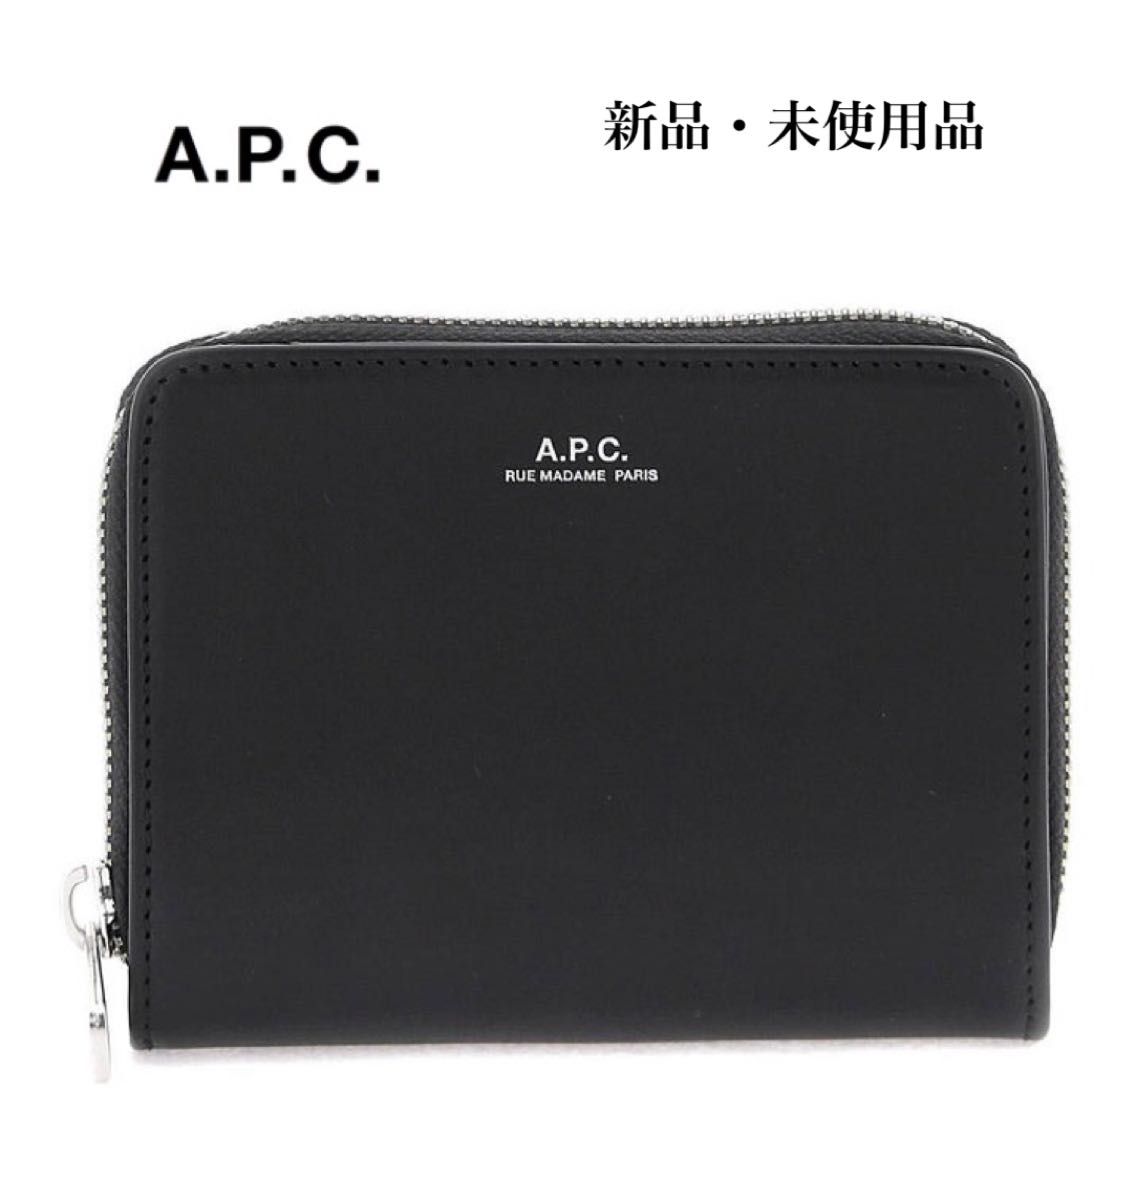 A.P.C. アーペーセー 二つ折り 財布 ラウンドジップ メンズ WALLET 黒 ブラック PXAWV-H63087